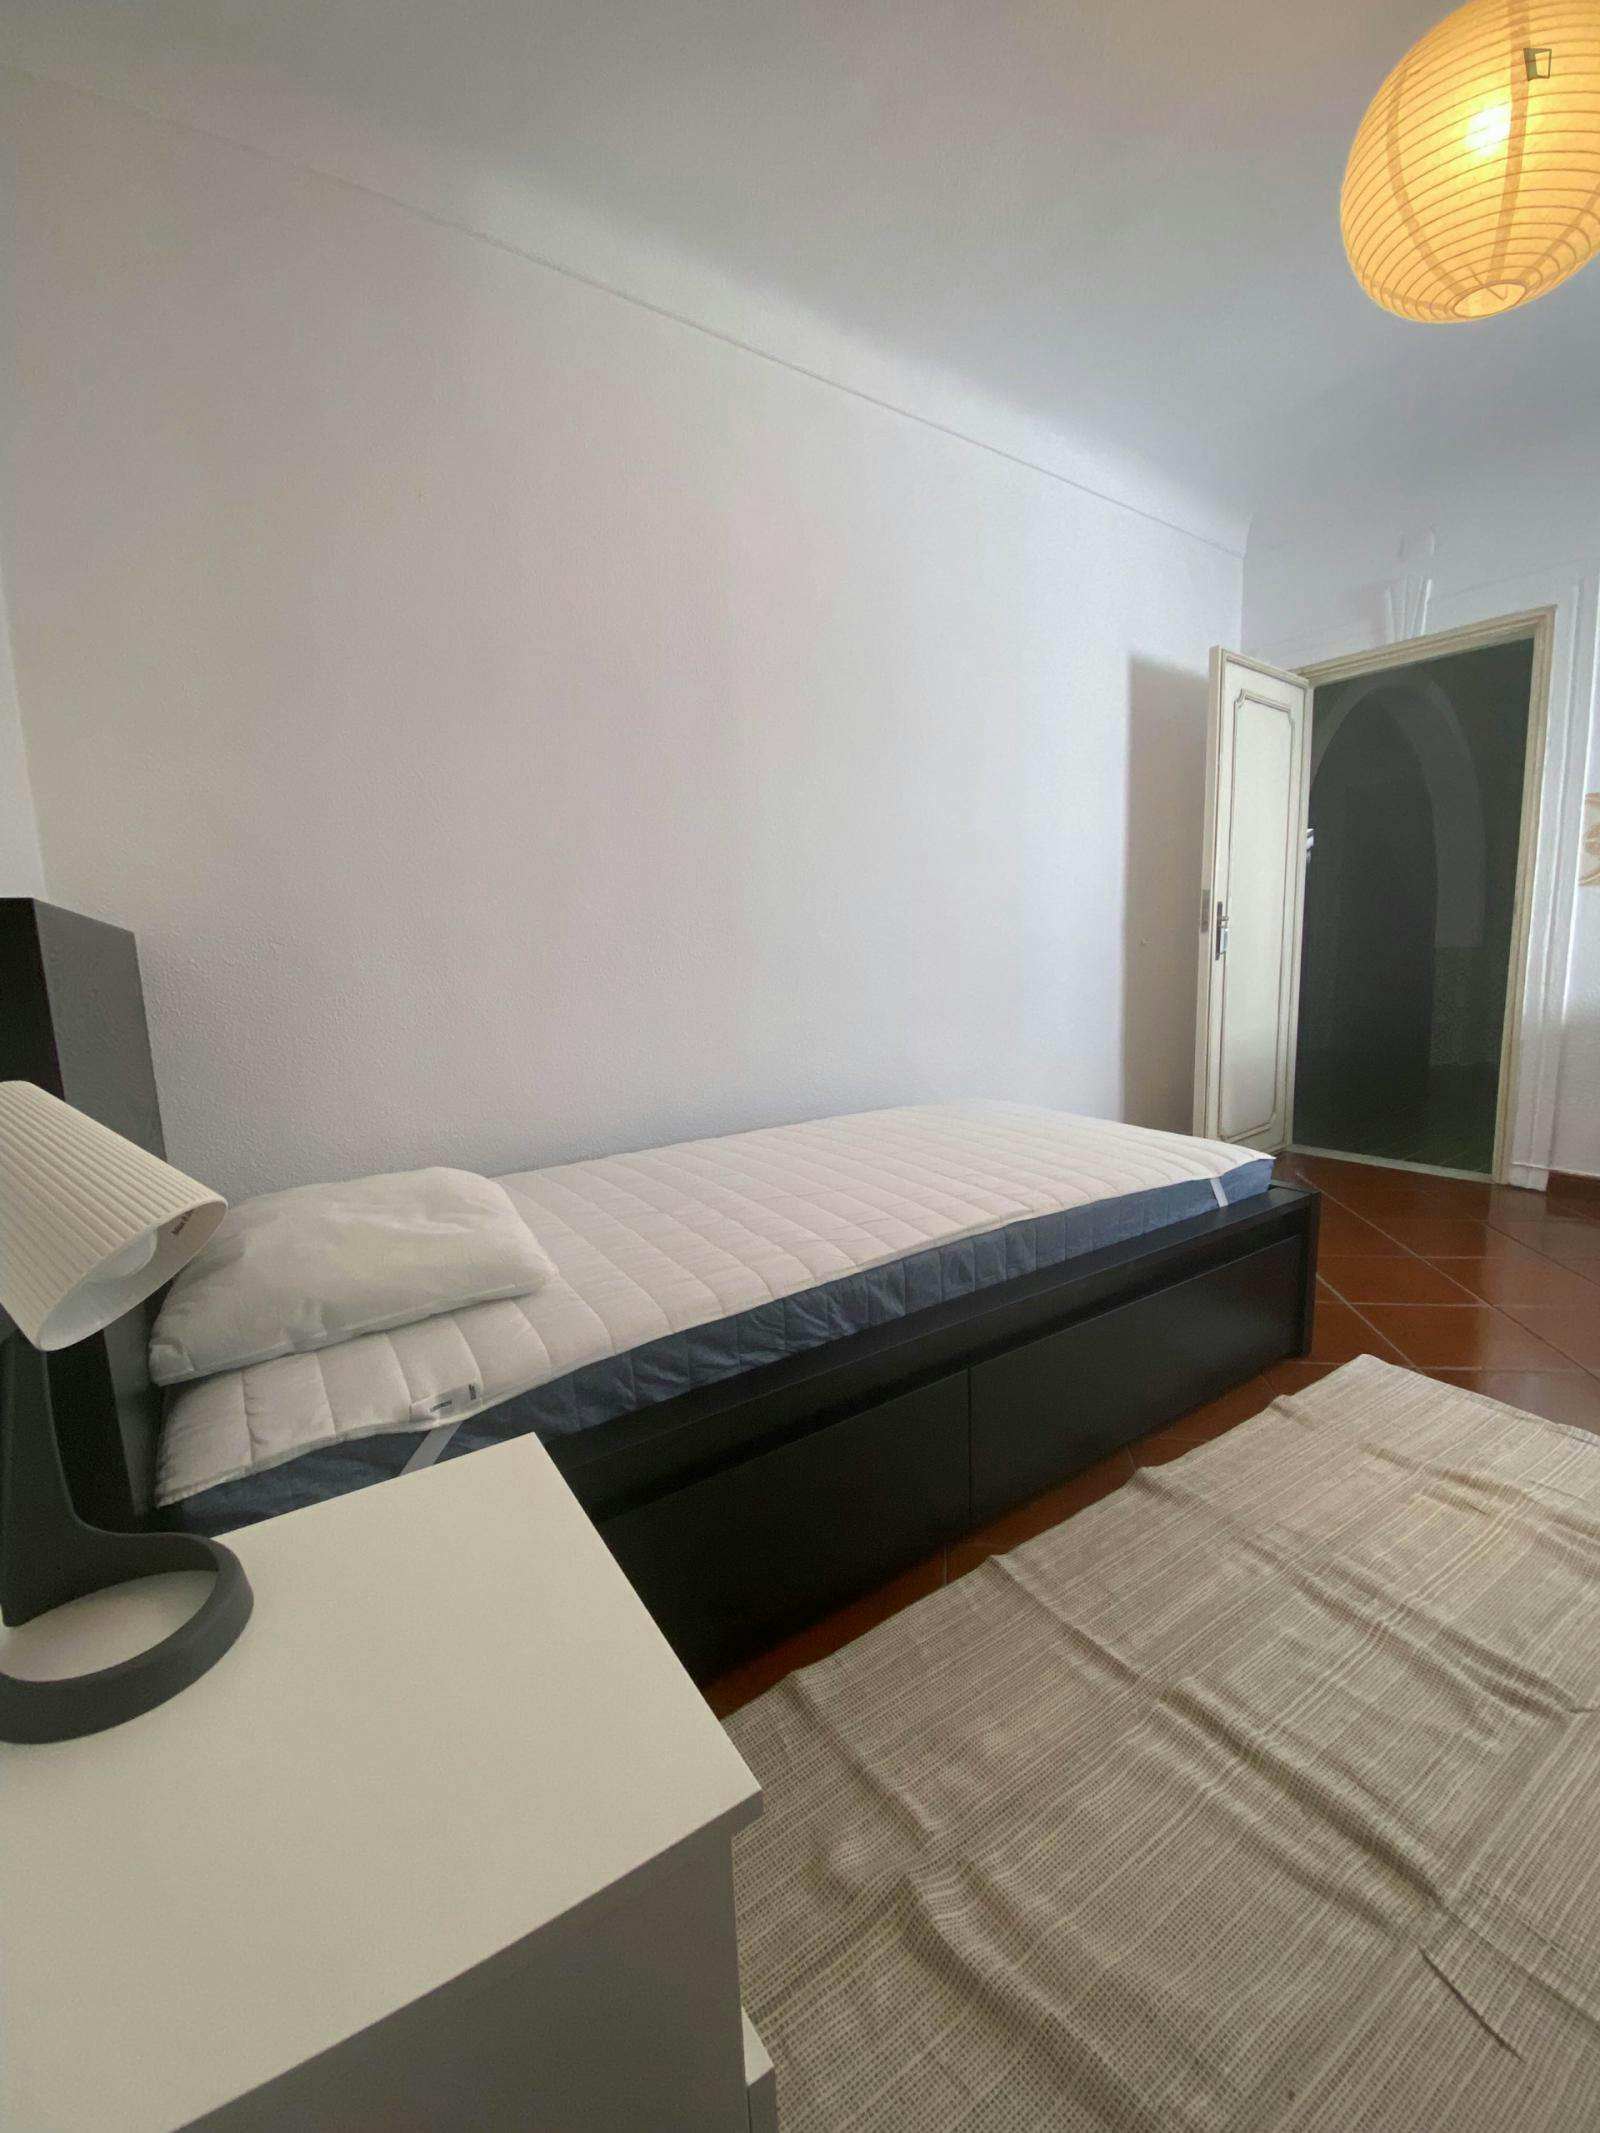 Very nice single bedroom in the heart of Évora - 50m near Praça do Giraldo